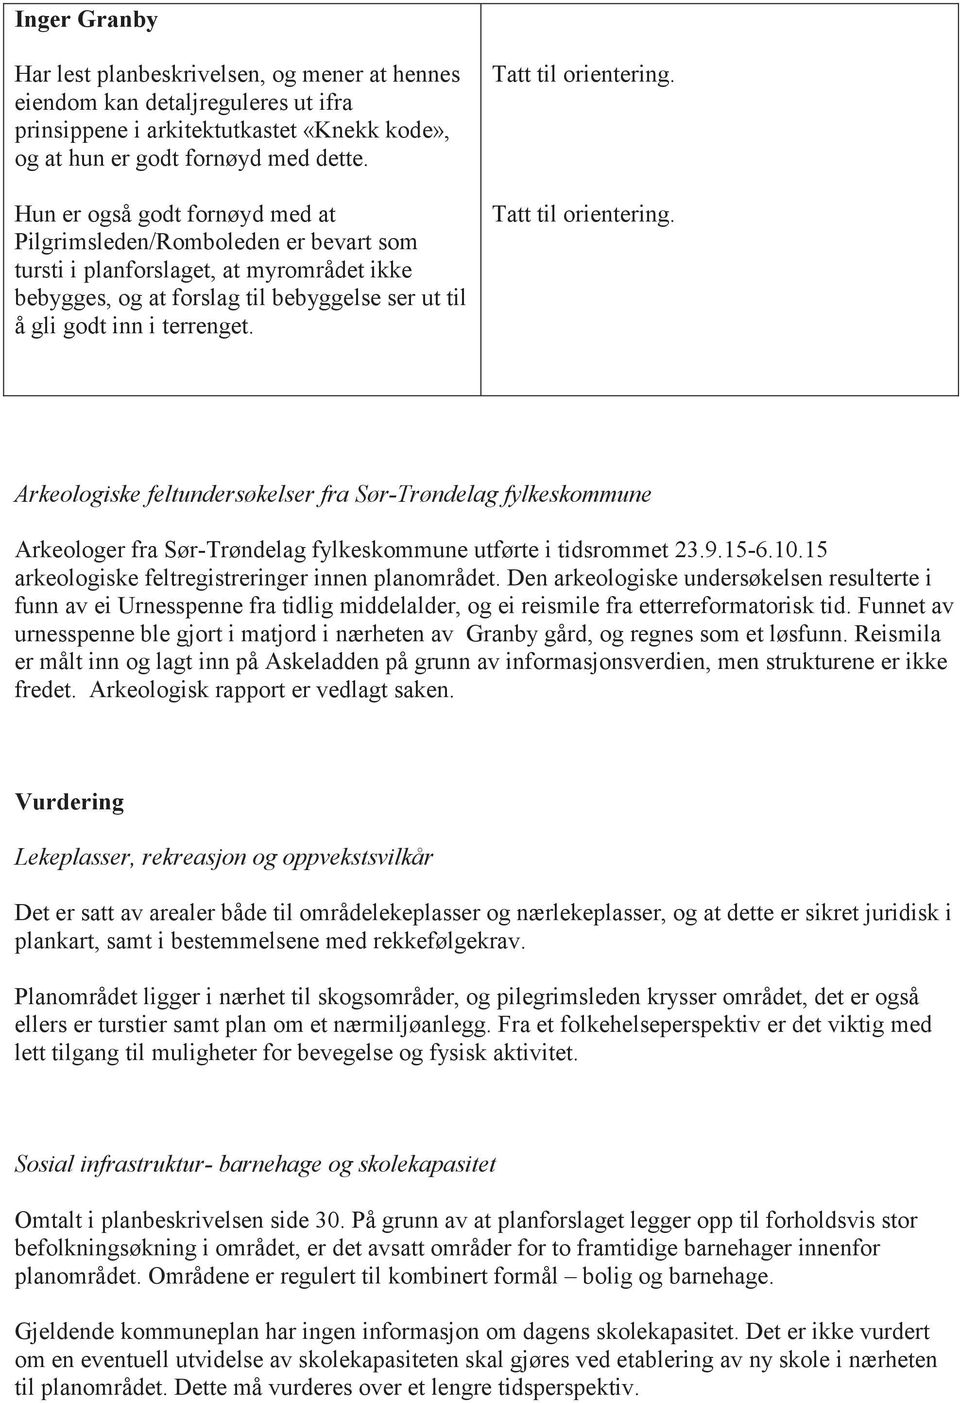 Arkeologiske feltundersøkelser fra Sør-Trøndelag fylkeskommune Arkeologer fra Sør-Trøndelag fylkeskommune utførte i tidsrommet 23.9.15-6.10.15 arkeologiske feltregistreringer innen planområdet.